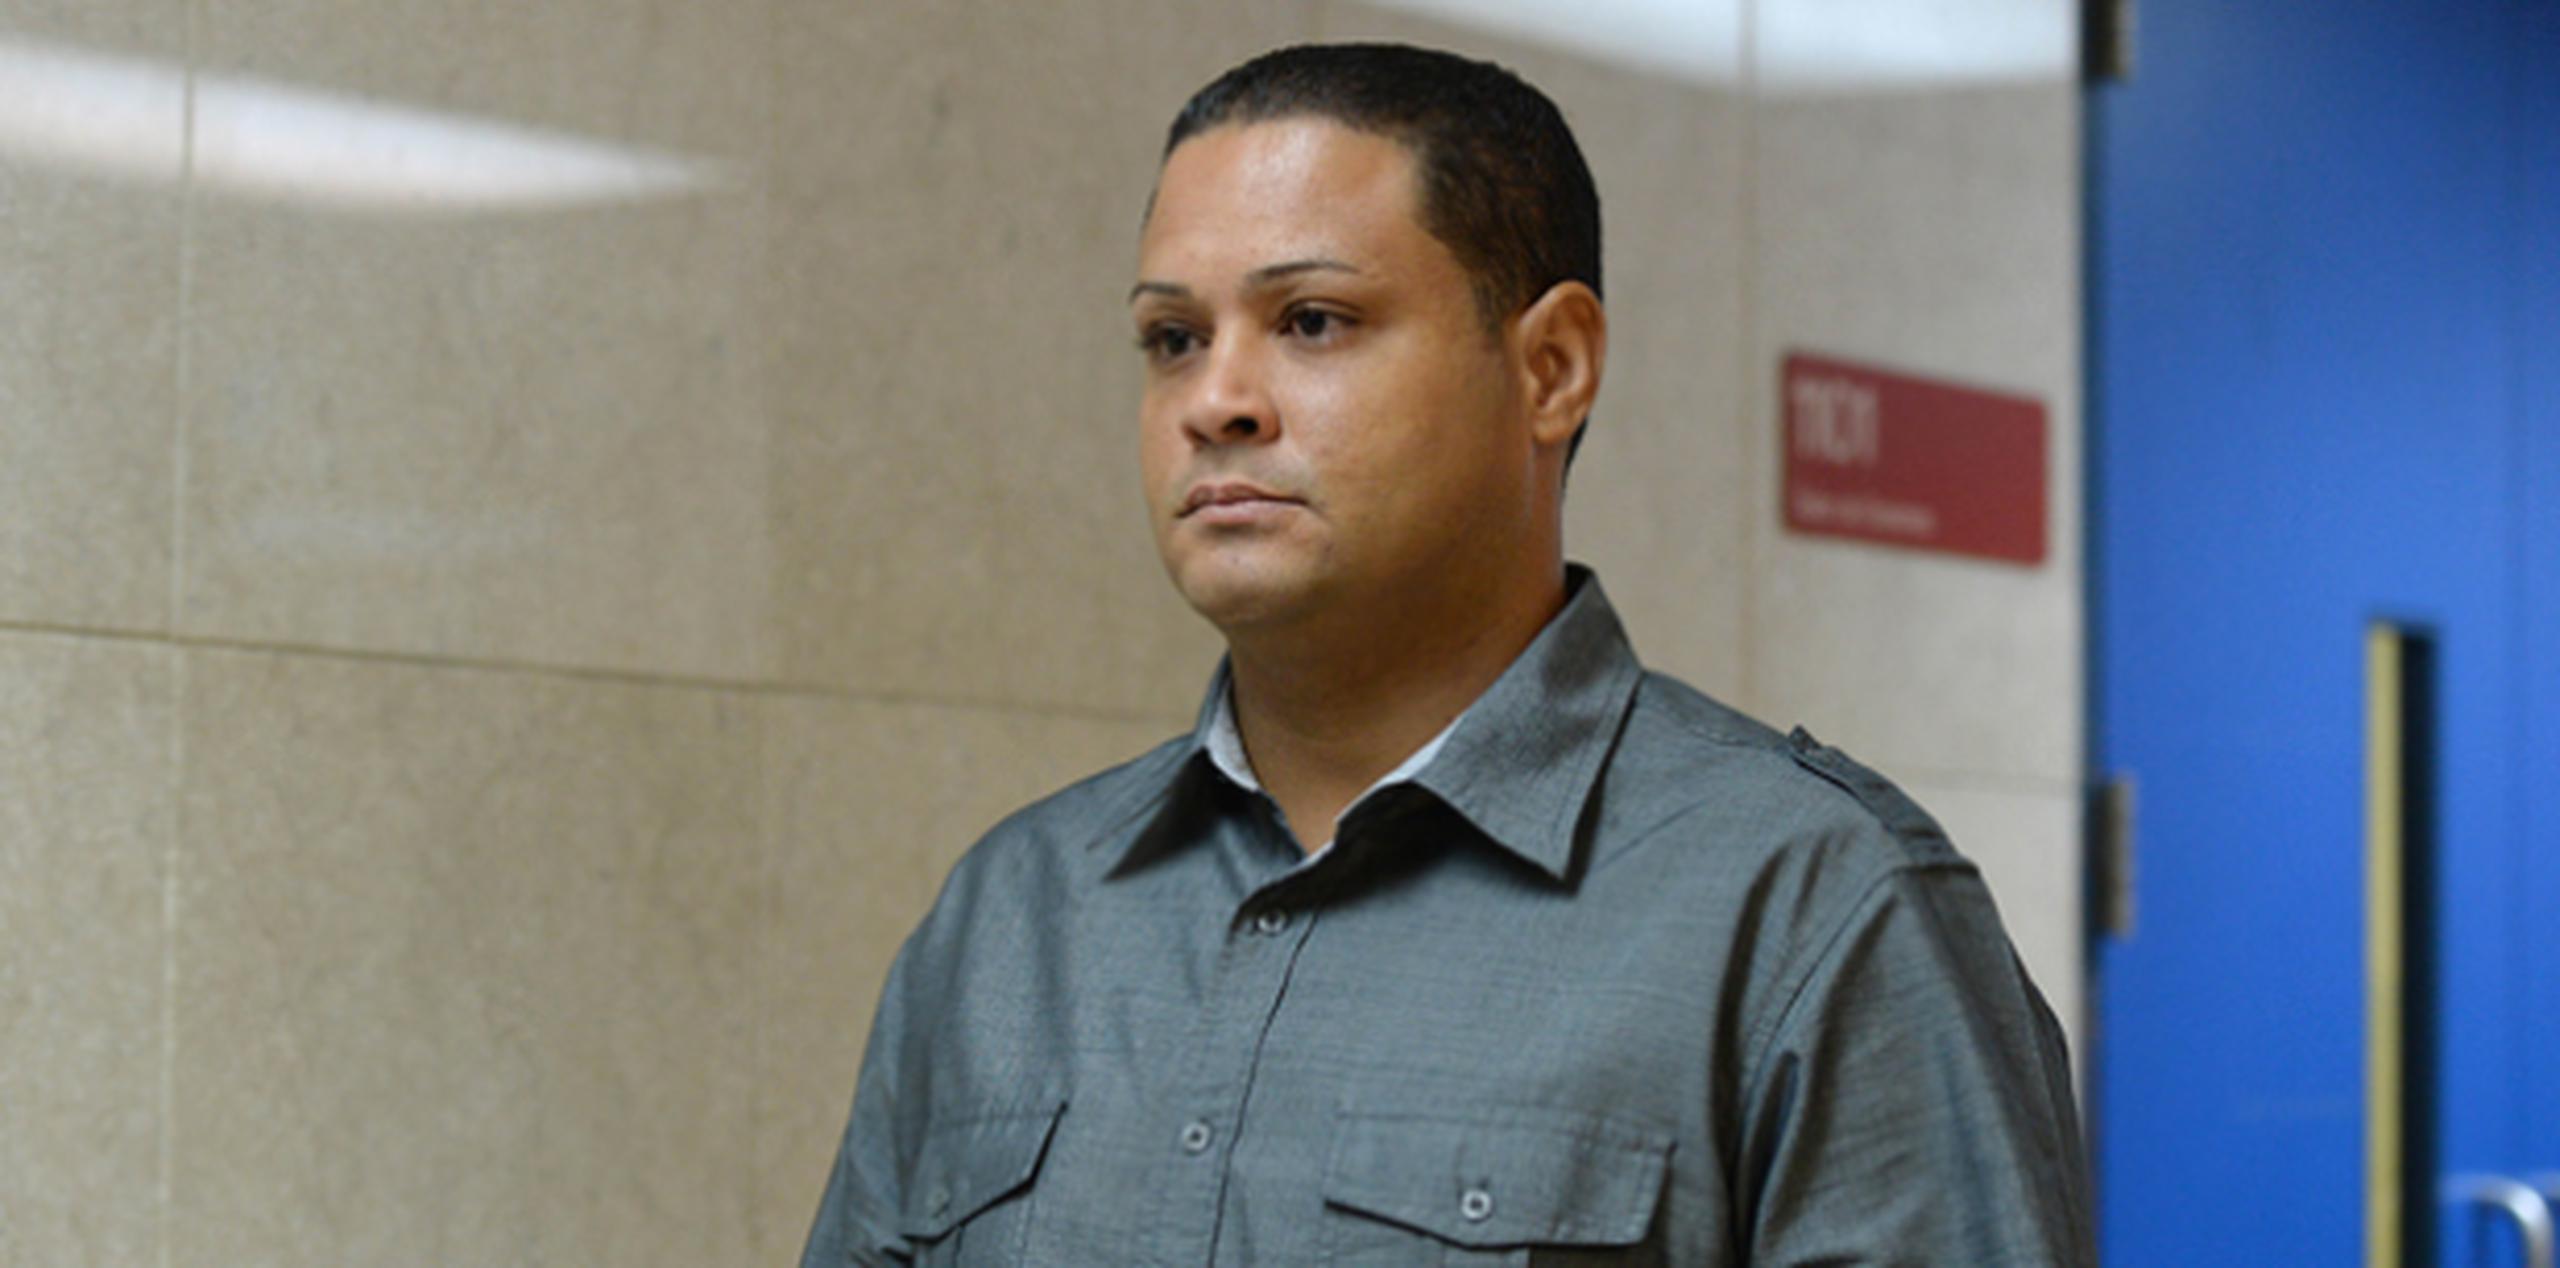 Miguel Bellber Sánchez, empleado de la corporación, enfrenta cargos criminales en relación a una explosión que causó la muerte de dos trabajadores de la AEE el 13 de julio de 2014. (Archivo)